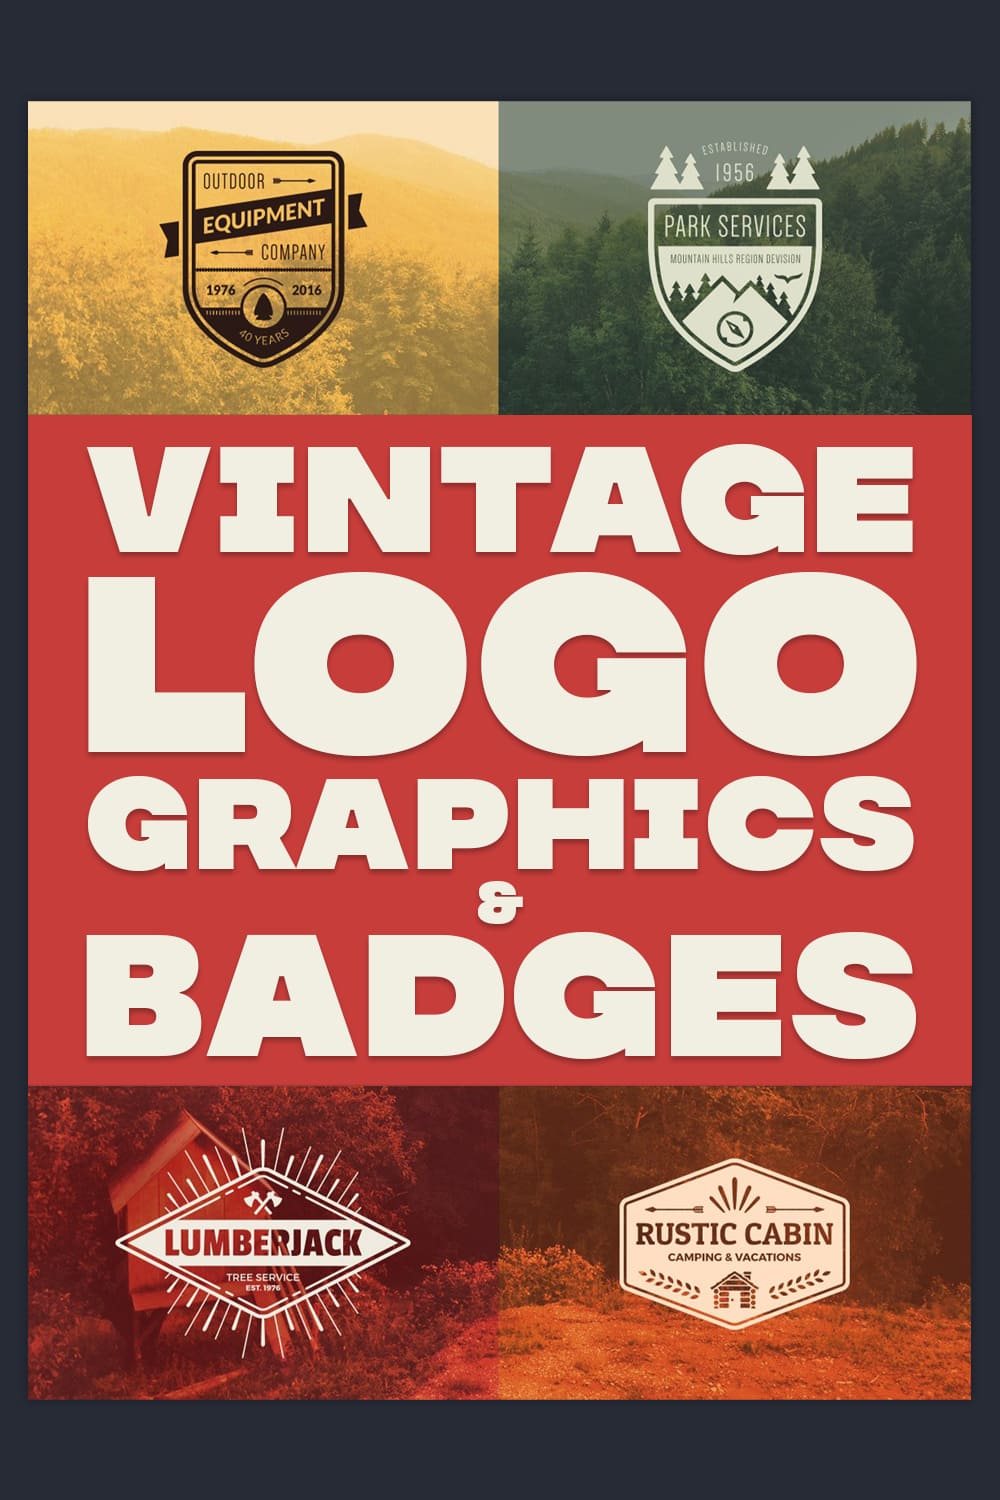 Vintage Logo Graphics Badges Pinterest image.